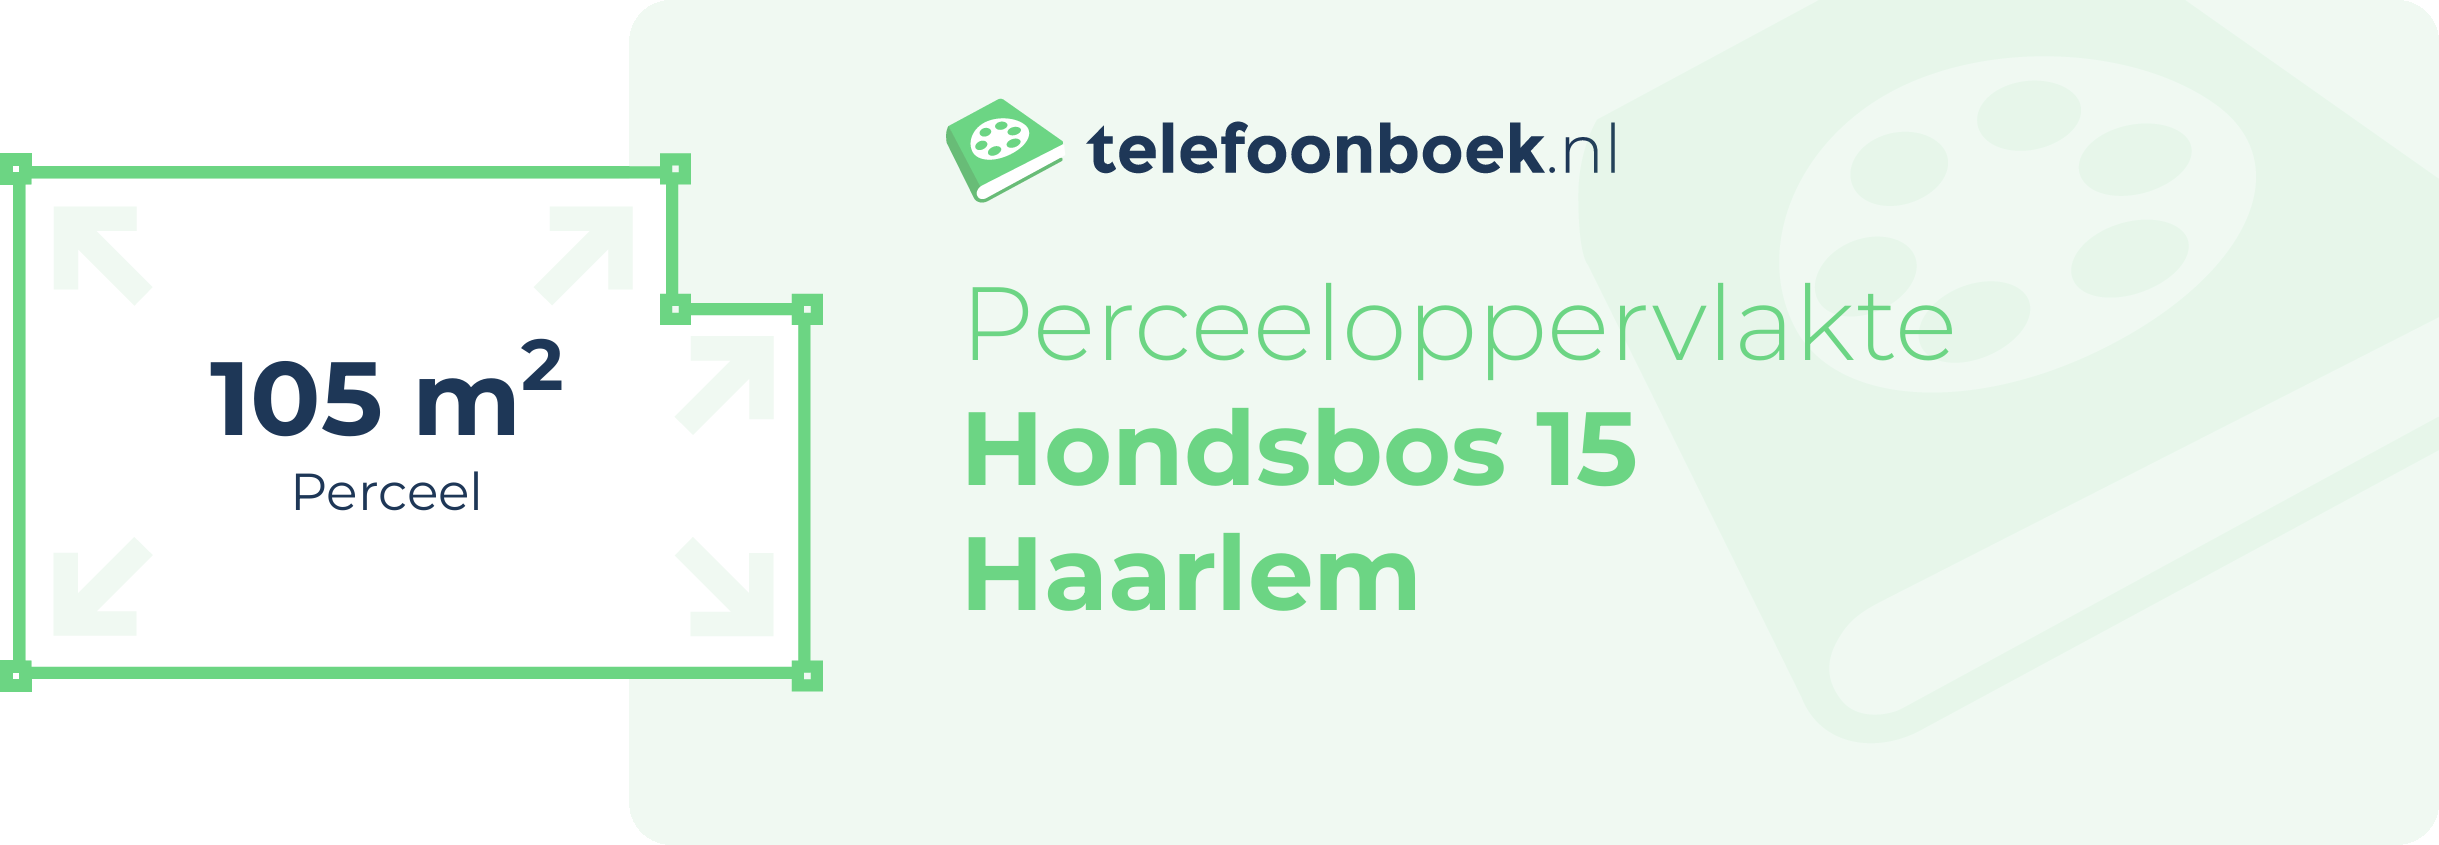 Perceeloppervlakte Hondsbos 15 Haarlem